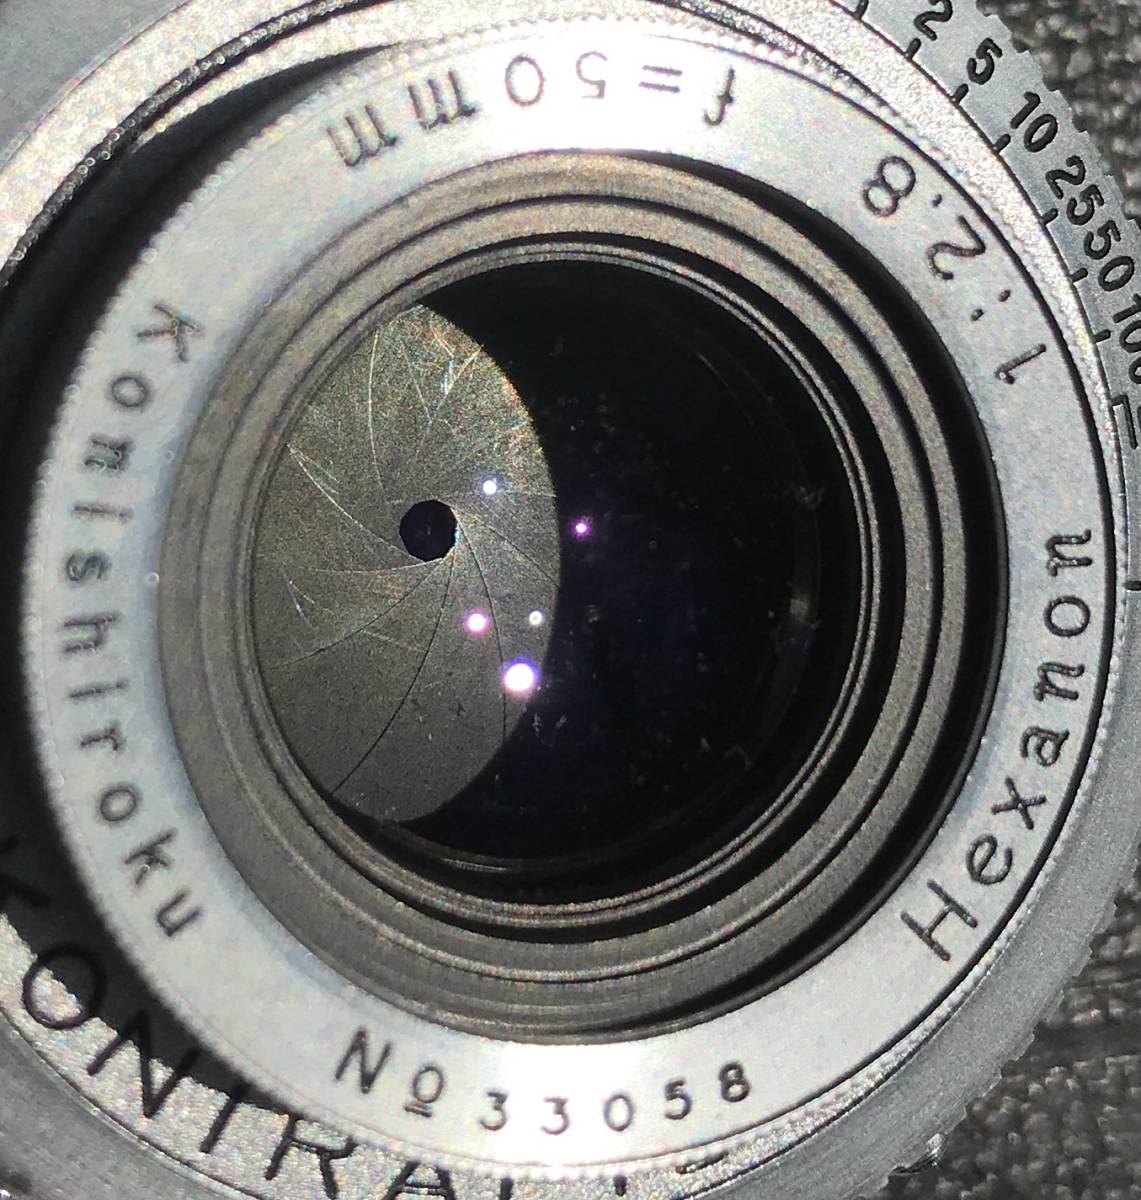 小西六 KONICAⅠ Hexanon 50mm f2.8 シャッター動作 距離計動作 レンズキャップ付属 コニカ コニカ1 フィルムカメラ アンティークカメラ_絞り羽根を絞った状態